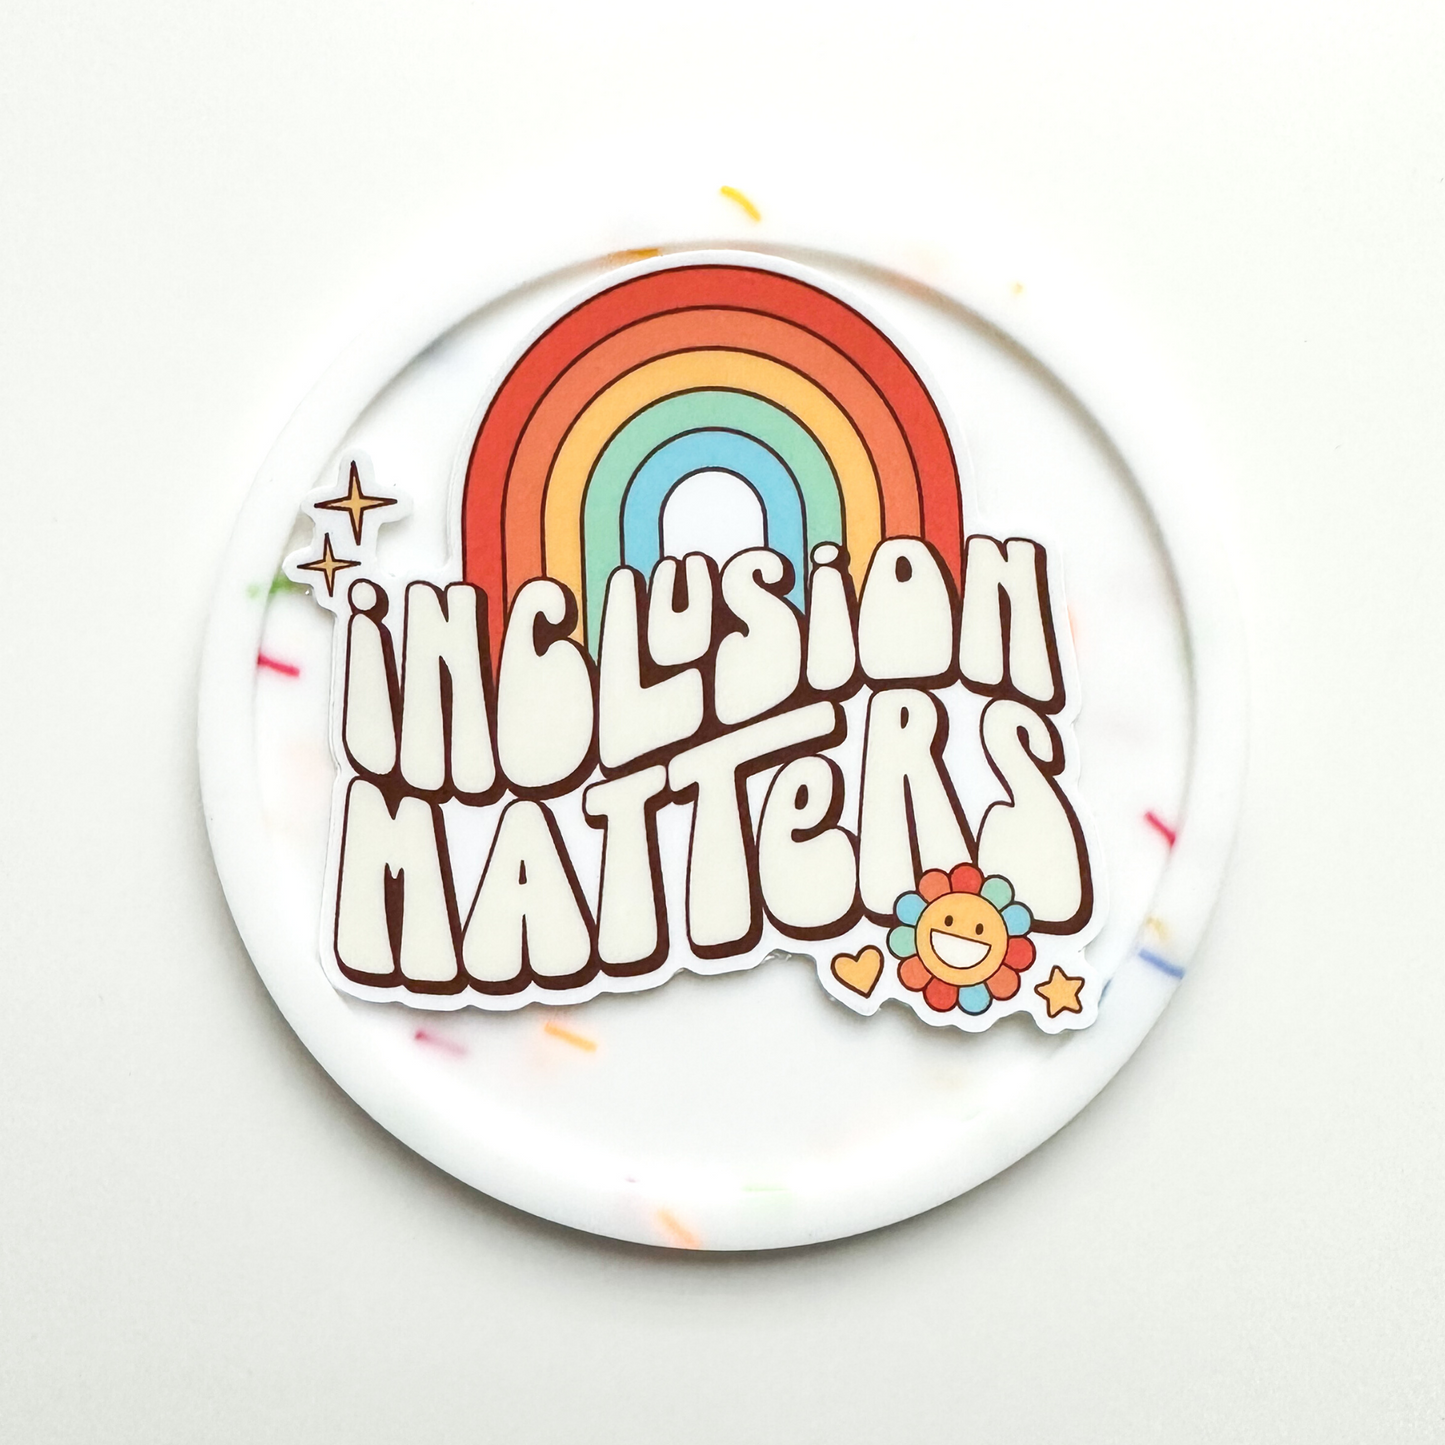 Retro Inclusion Matters Sticker